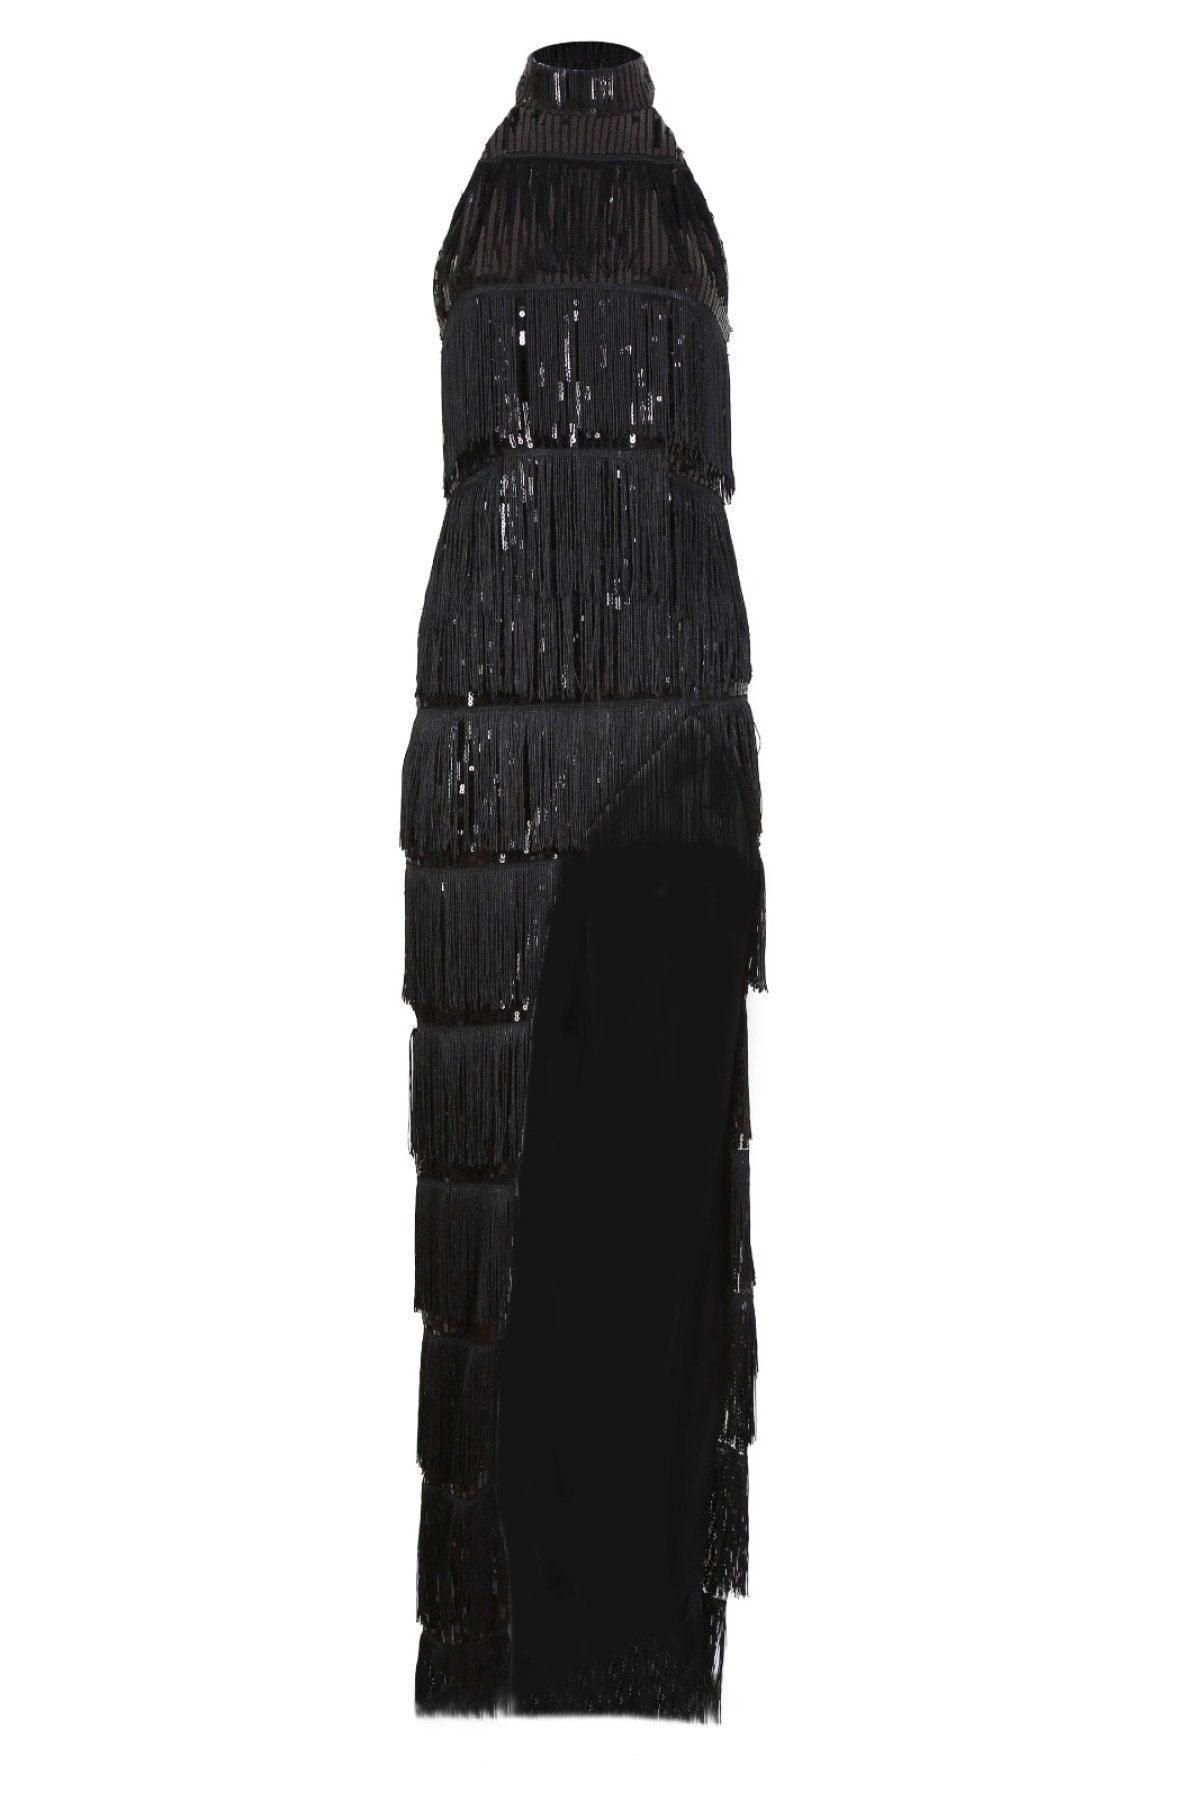 Black Evening Dress - Swordslife